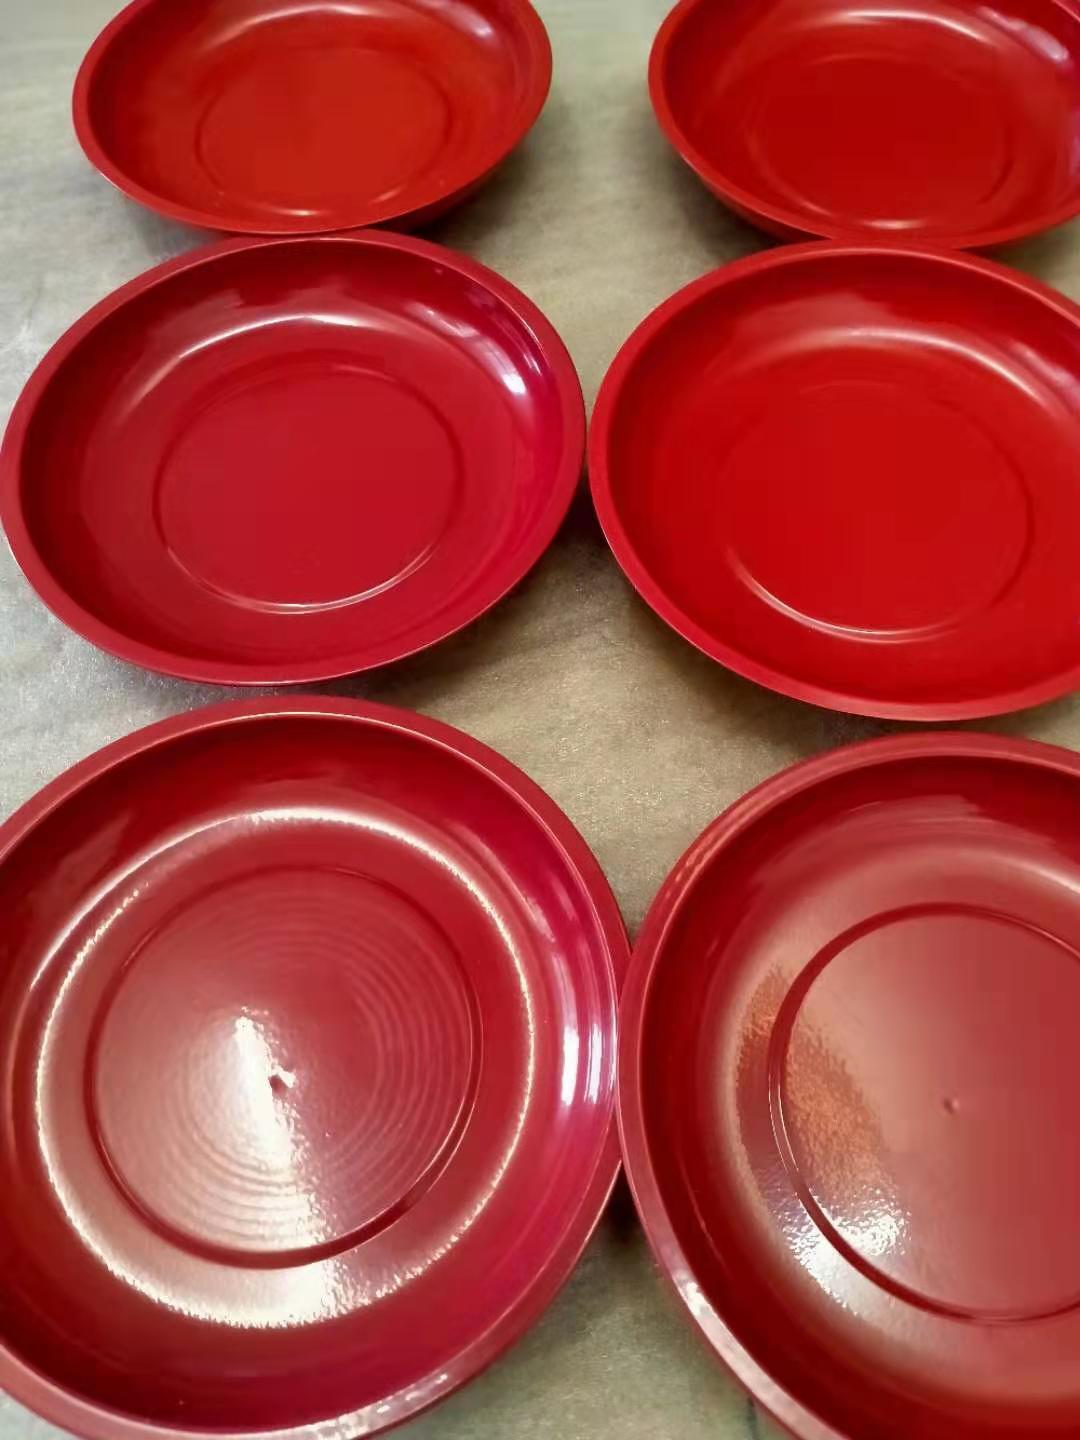 红色喷塑磁性收纳碗 汽保机修磁力盘 底部装配磁铁 网上热销磁碗 可以牢牢吸附在铁制品上在倒挂状态磁碗和小零件都不会滑落9